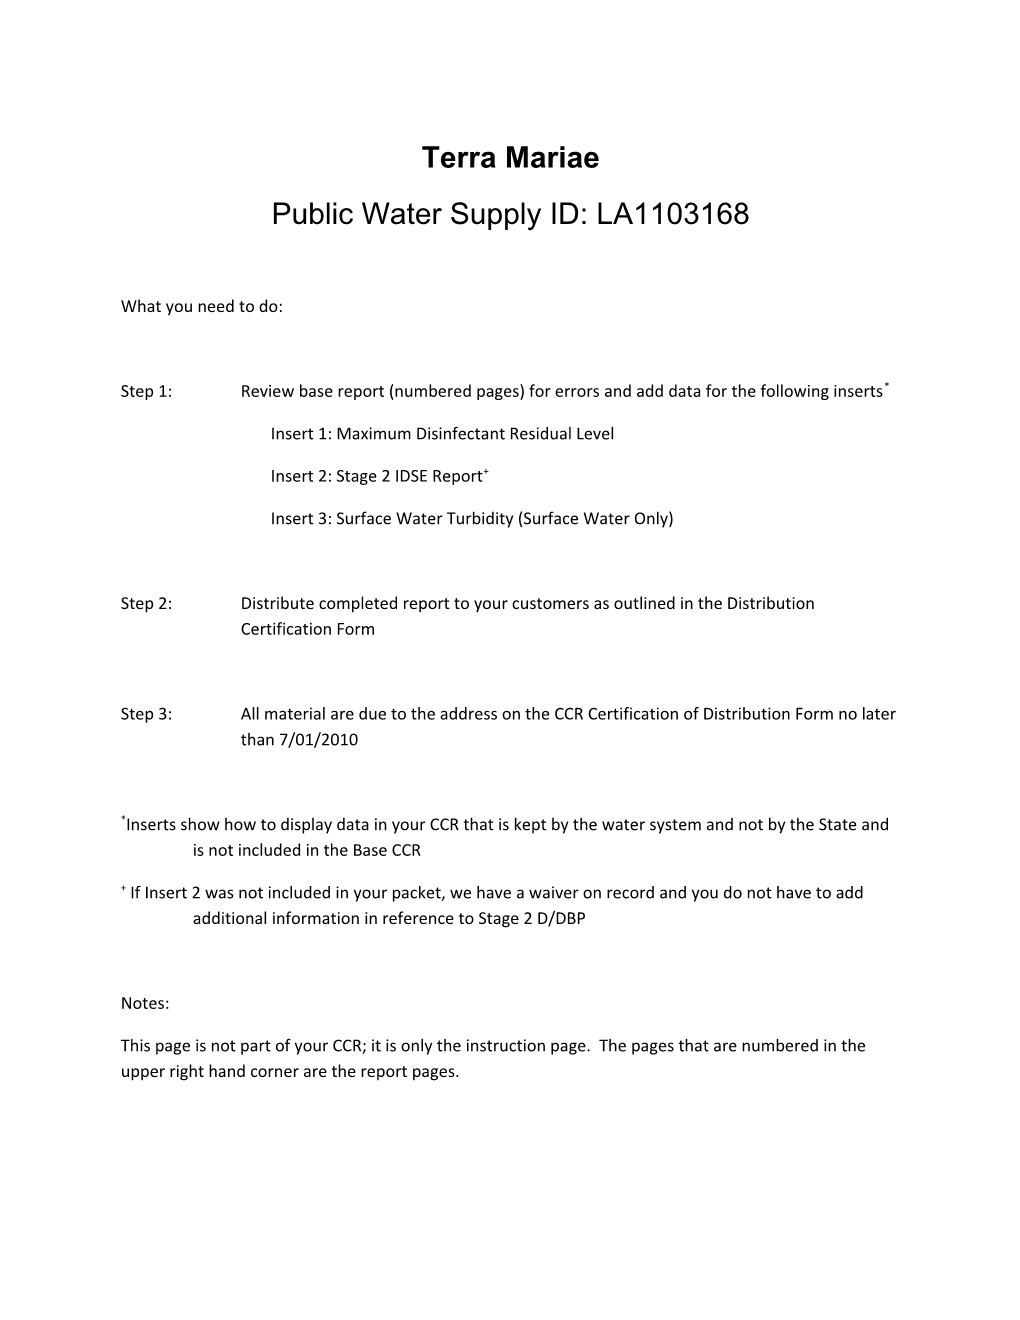 Public Water Supply ID: LA1103168